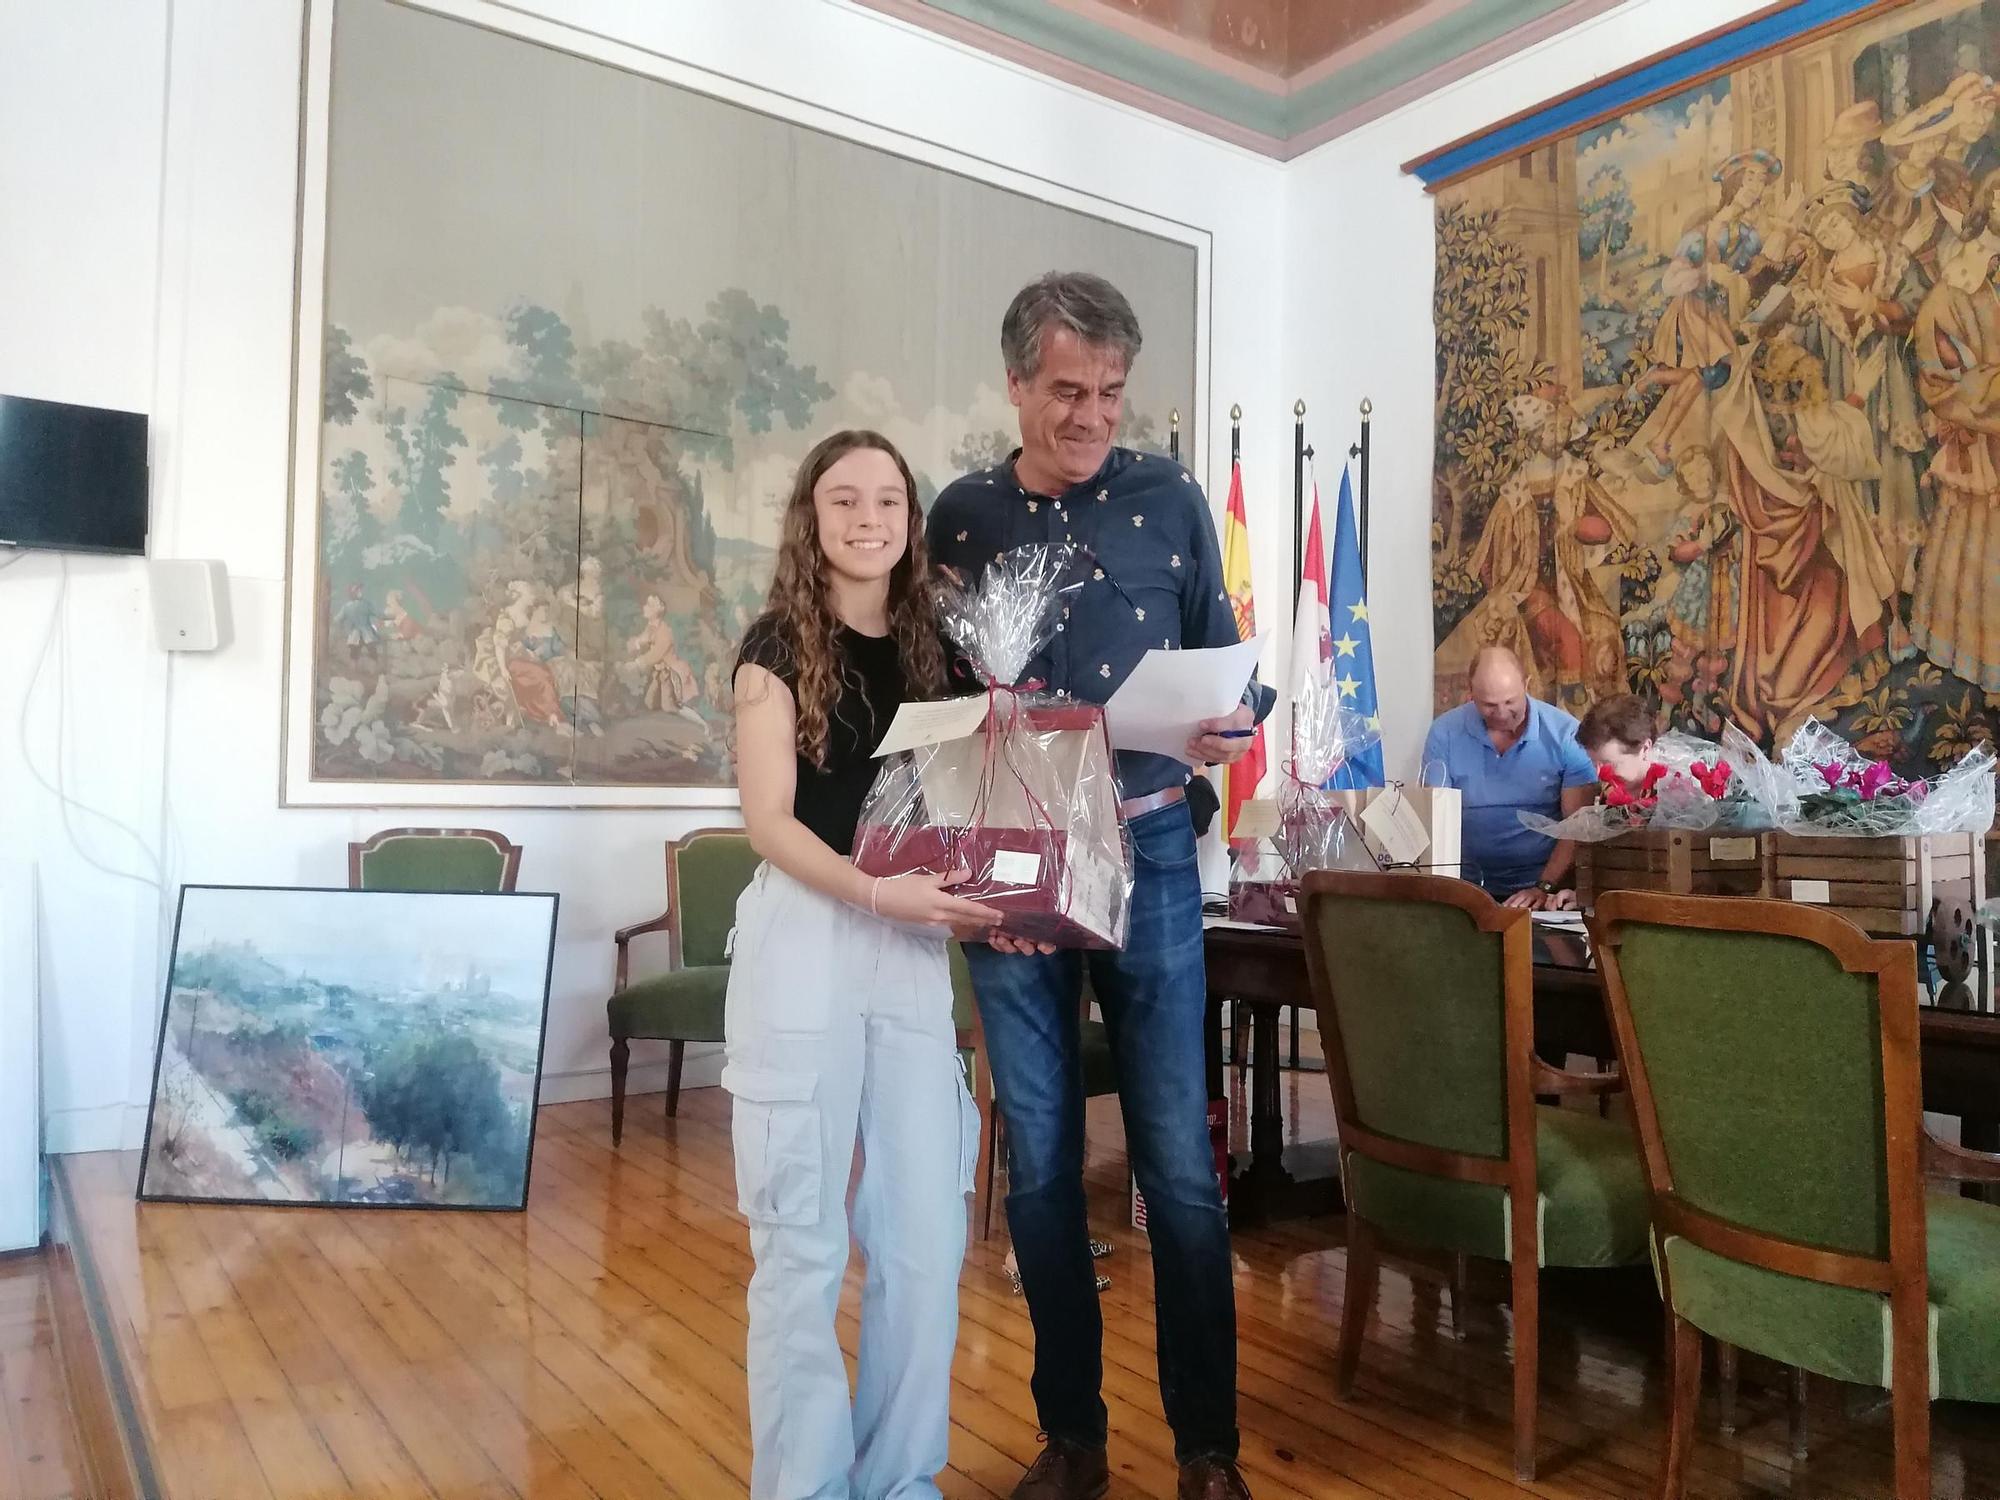 GALERÍA | Toro reparte los premios del concurso de pintura rápida